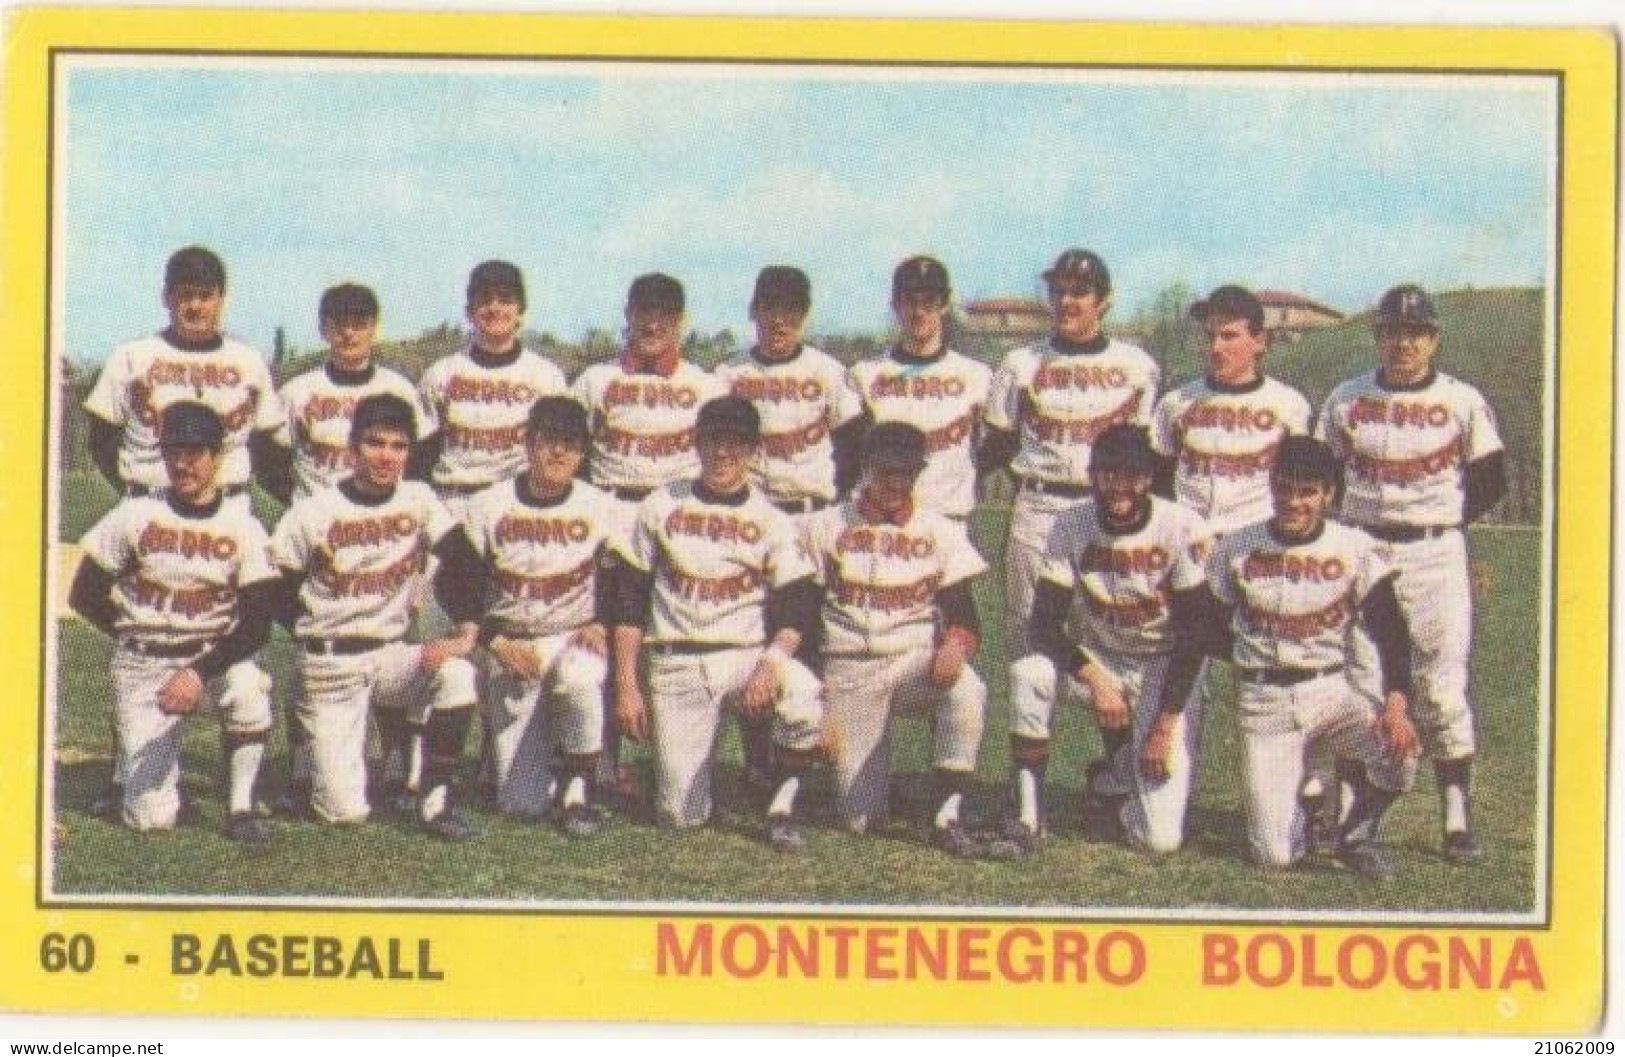 60 BASEBALL - SQUADRA MONTENEGRO BOLOGNA - CAMPIONI DELLO SPORT PANINI 1970-71 - Unclassified